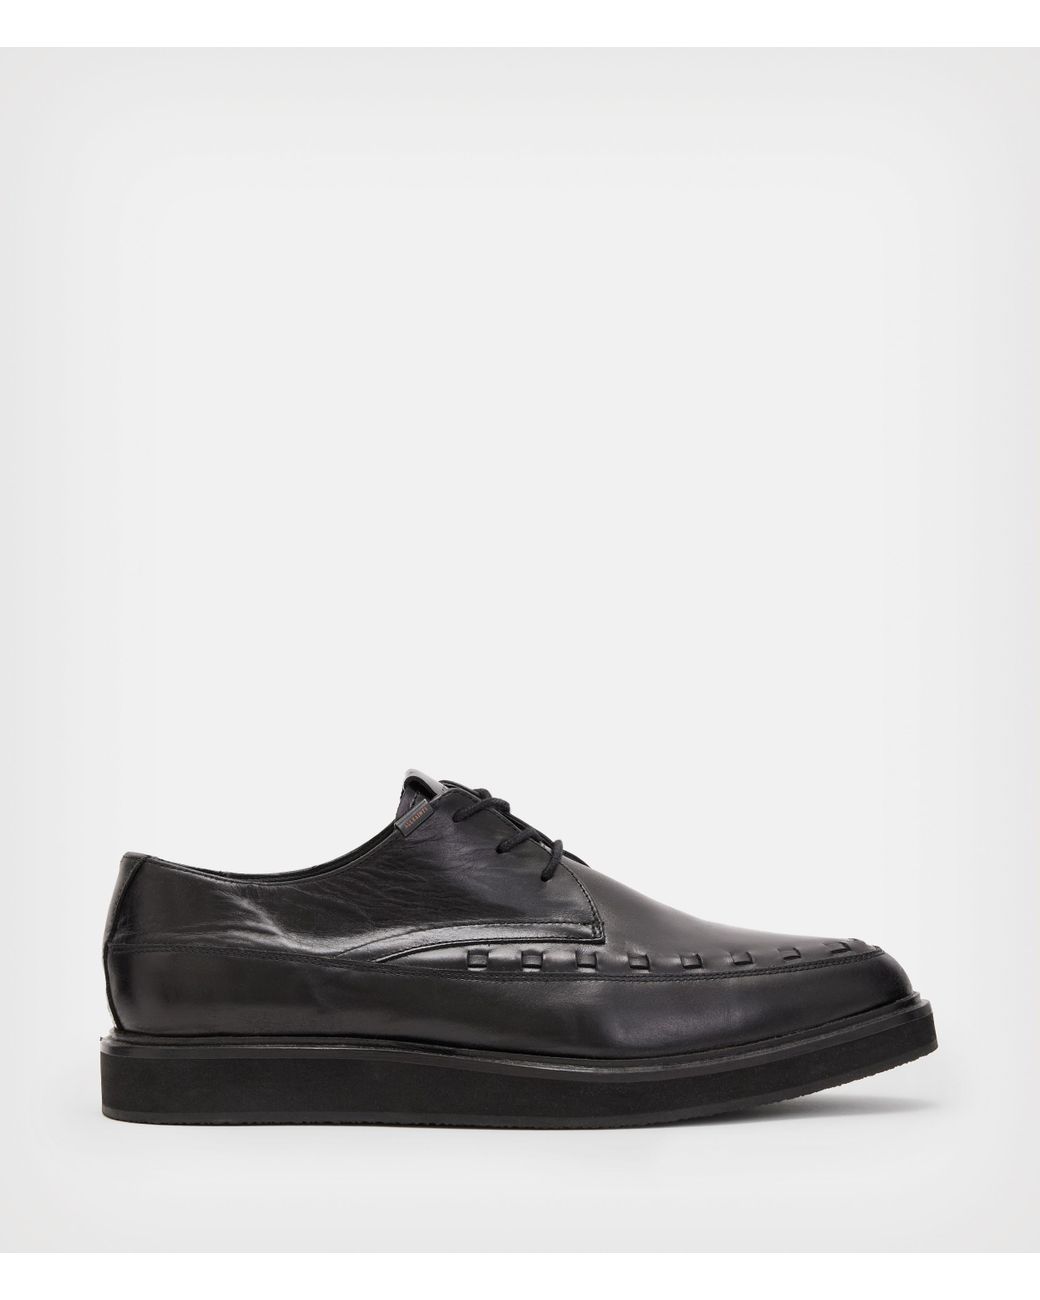 kompas pisk Slapper af AllSaints Topper Leather Derby Shoes in Black for Men | Lyst Canada